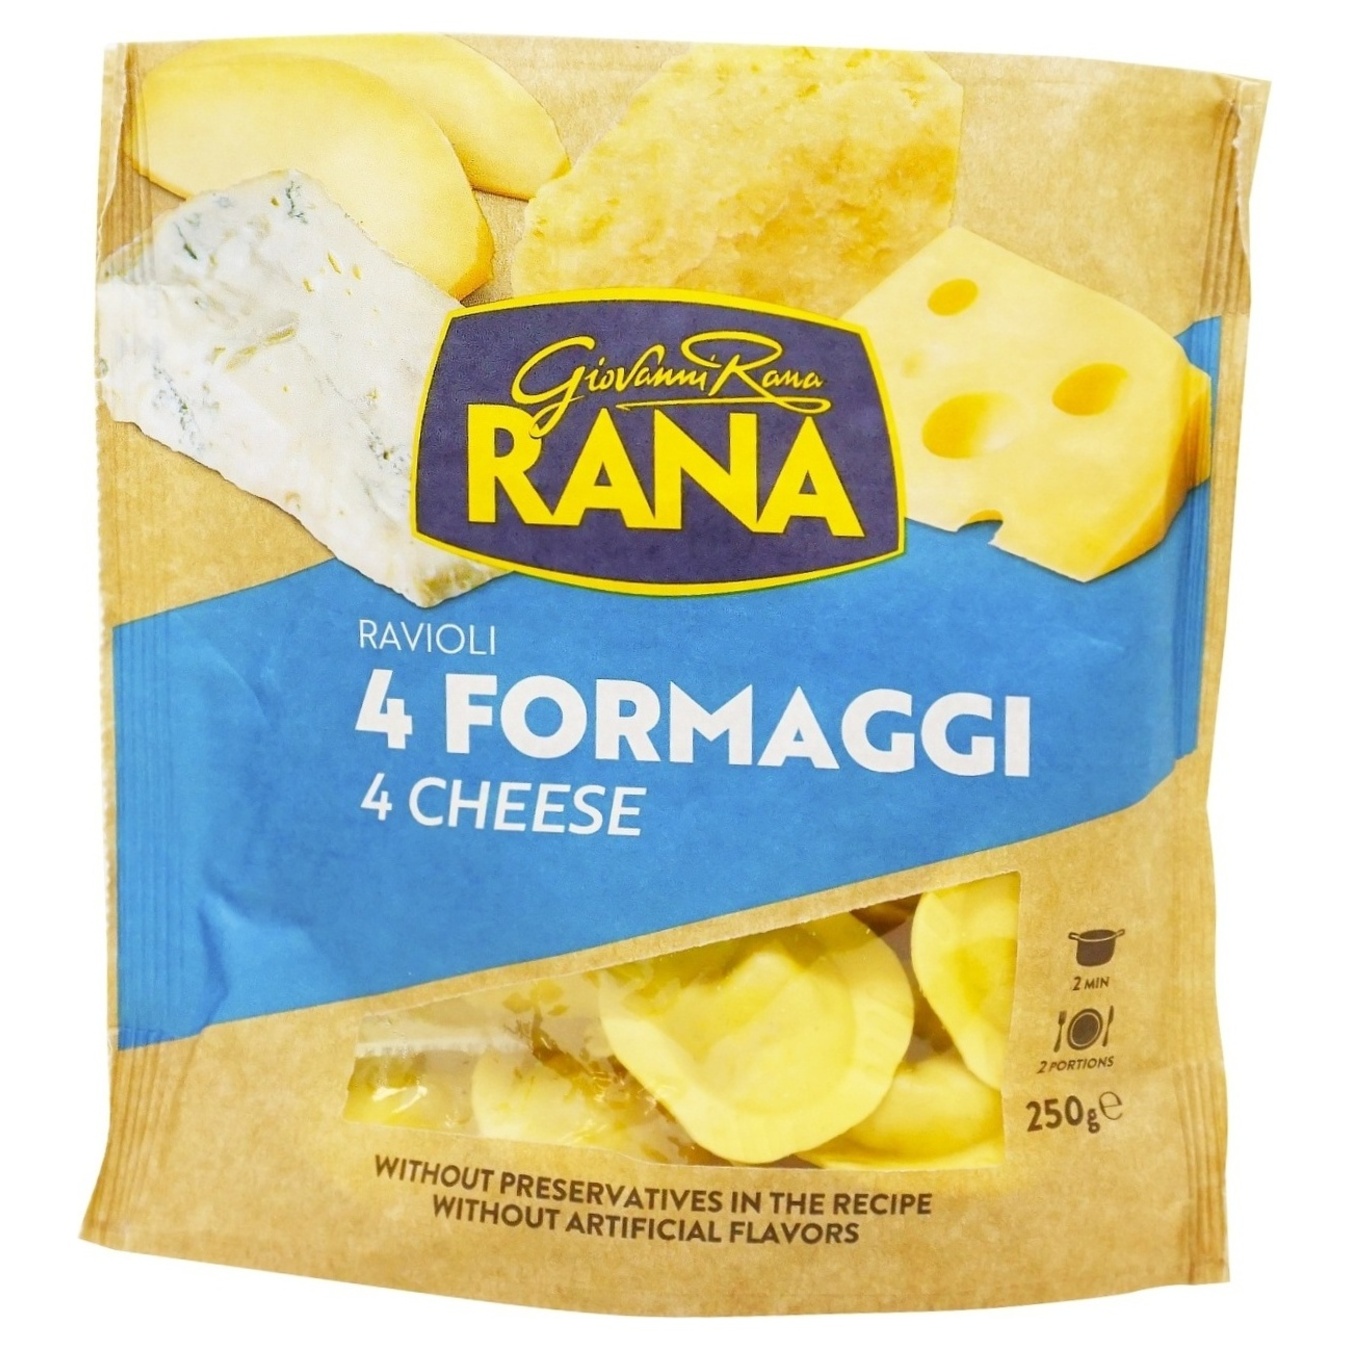 Ravioli Pastificio Rana S.p.A. 4 cheese 250g chilled